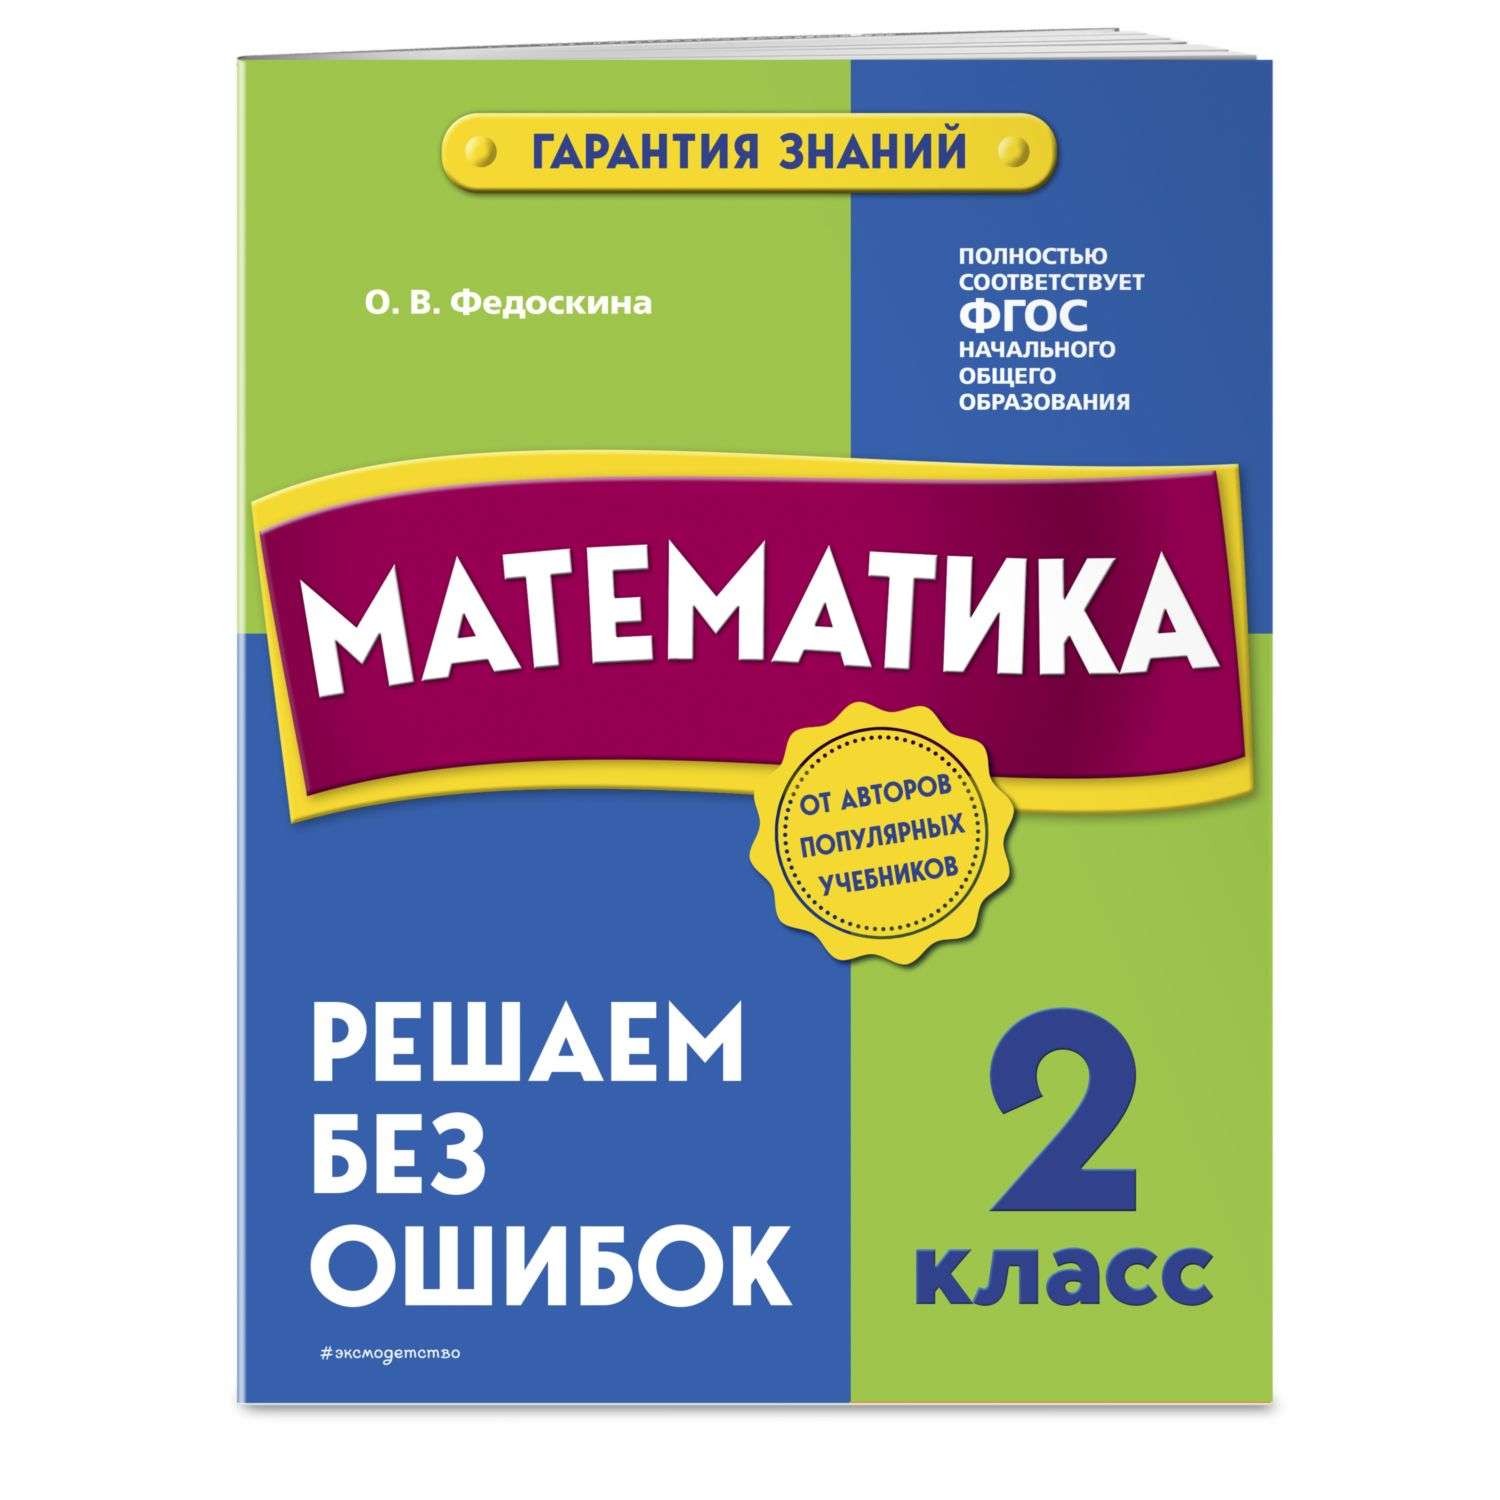 Книга Эксмо Математика 2 класс Решаем без ошибок - фото 1